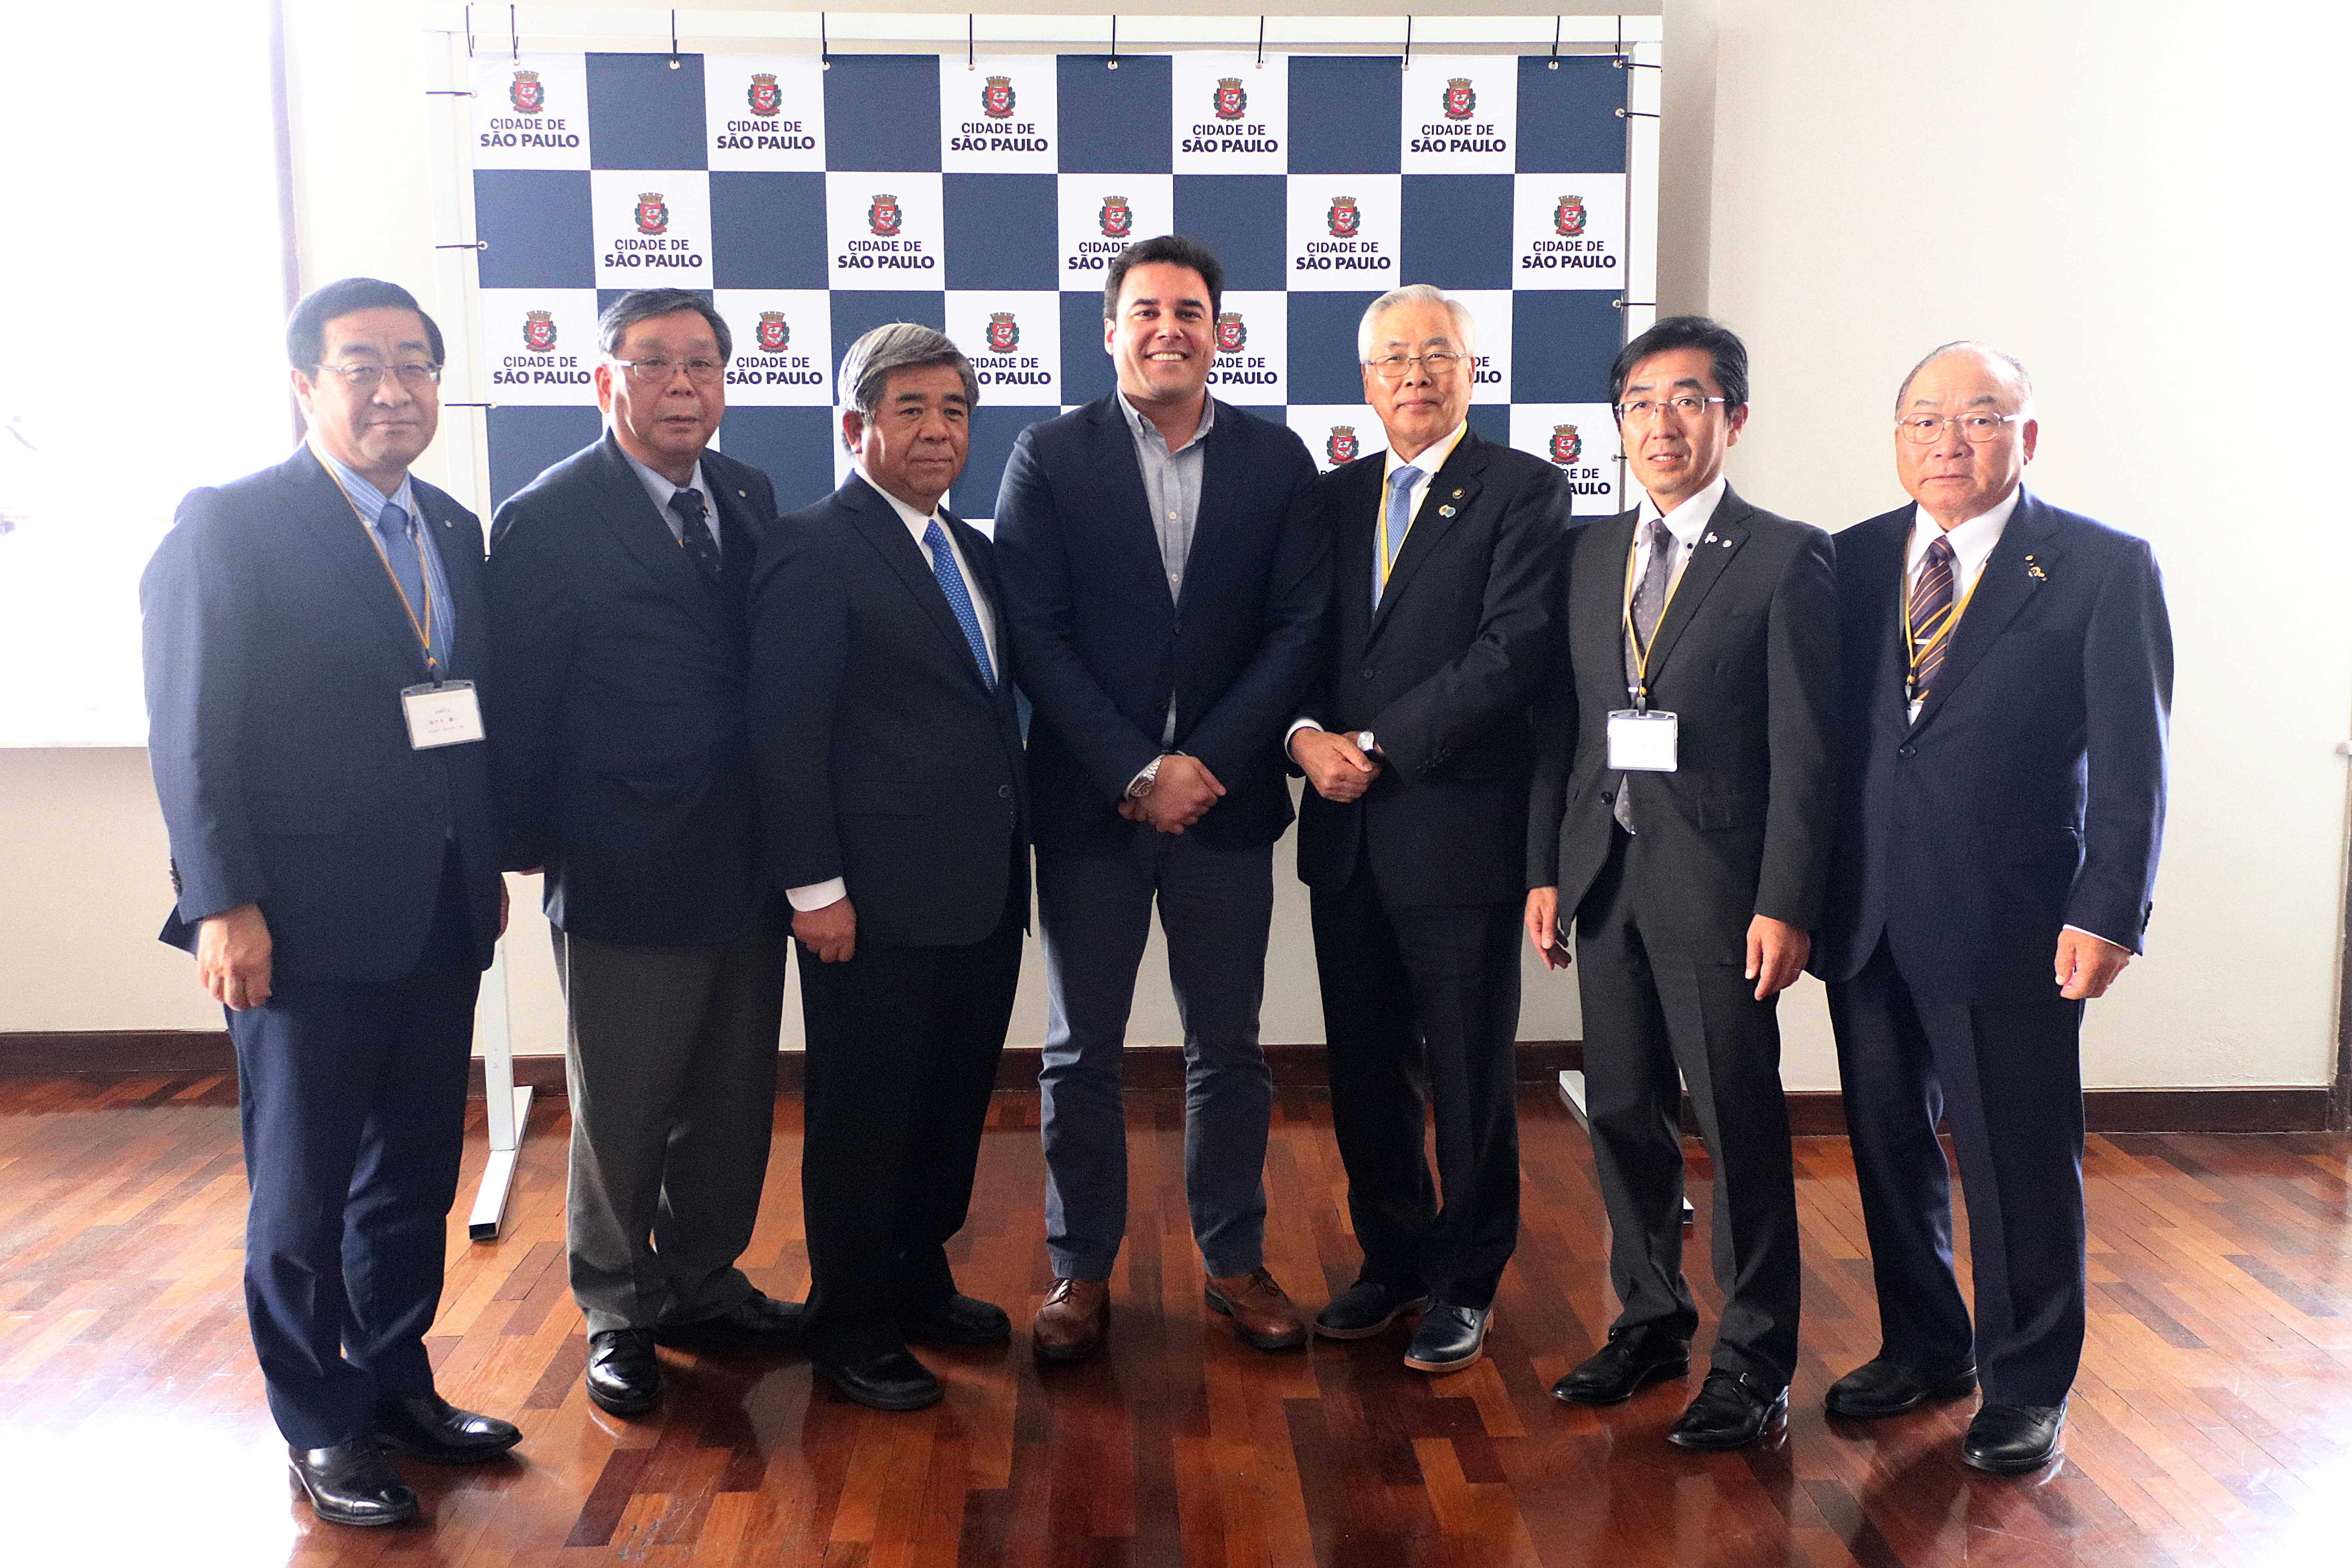 Secretário Luiz Alvaro ao lado dos Prefeitos da Província de Hokkaido (Japão). Ao fundo, um backdrop com o logotipo da Prefeitura de São Paulo.